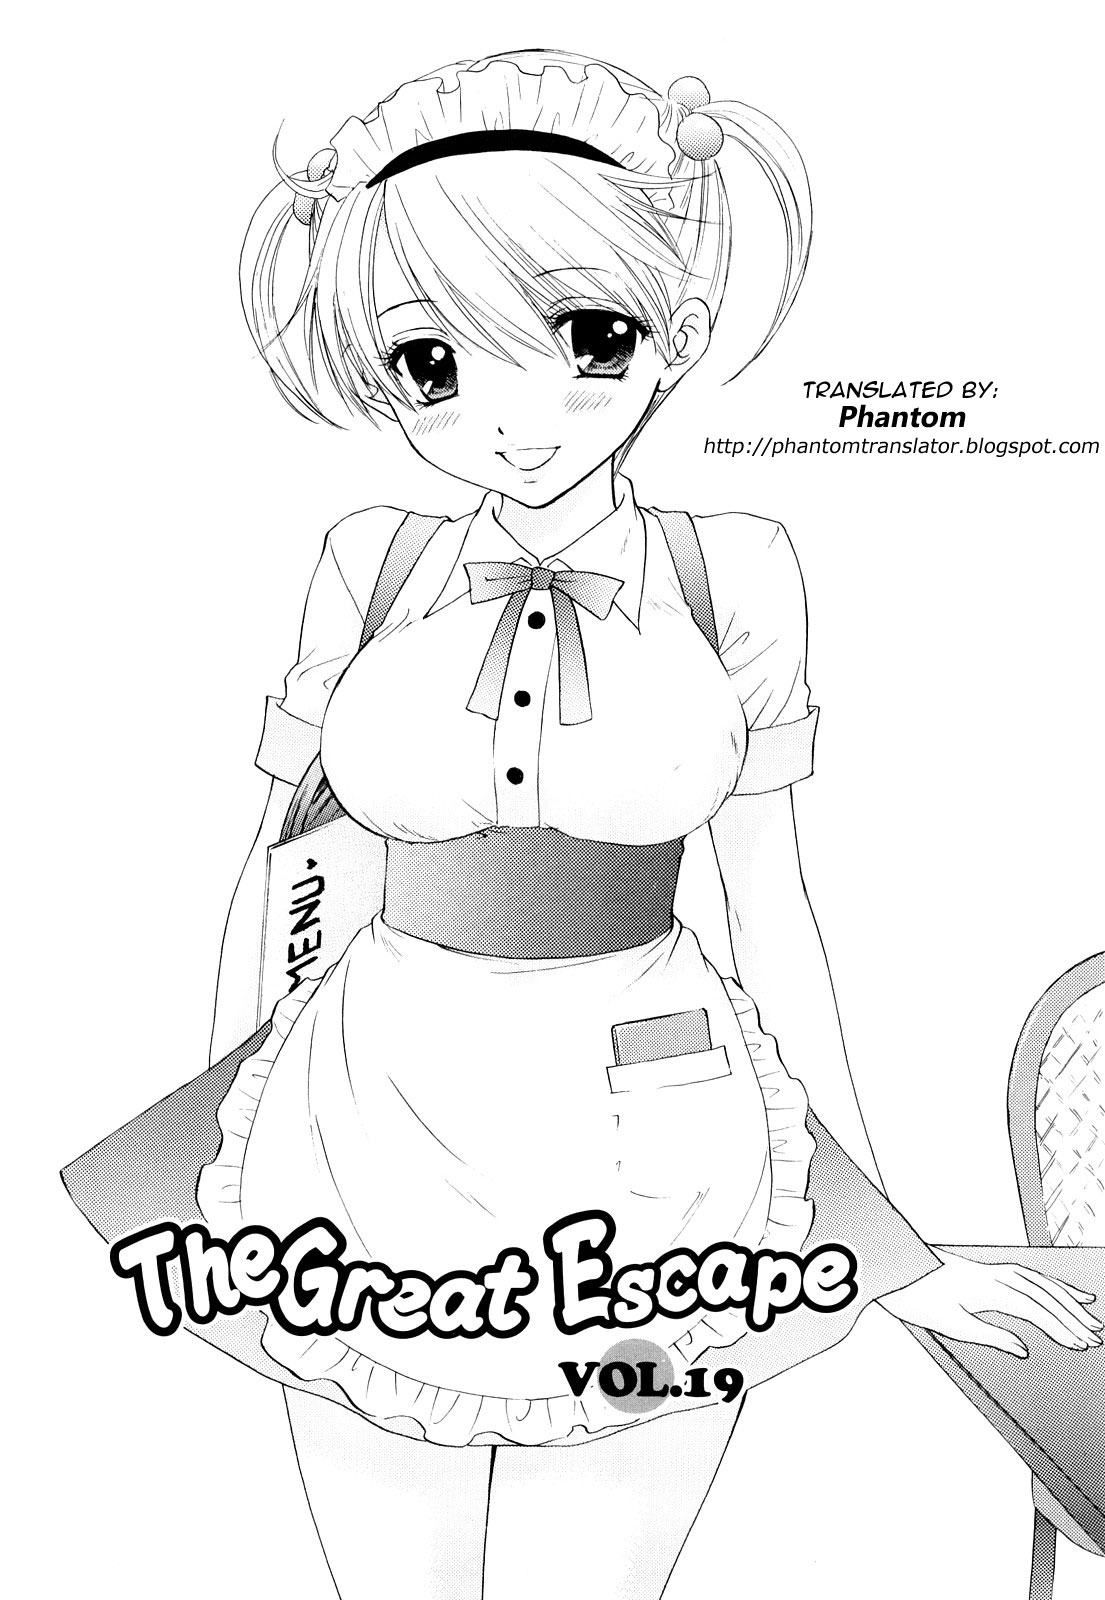 [尾崎未来] The Great Escape 3 第18-19章 [英訳]